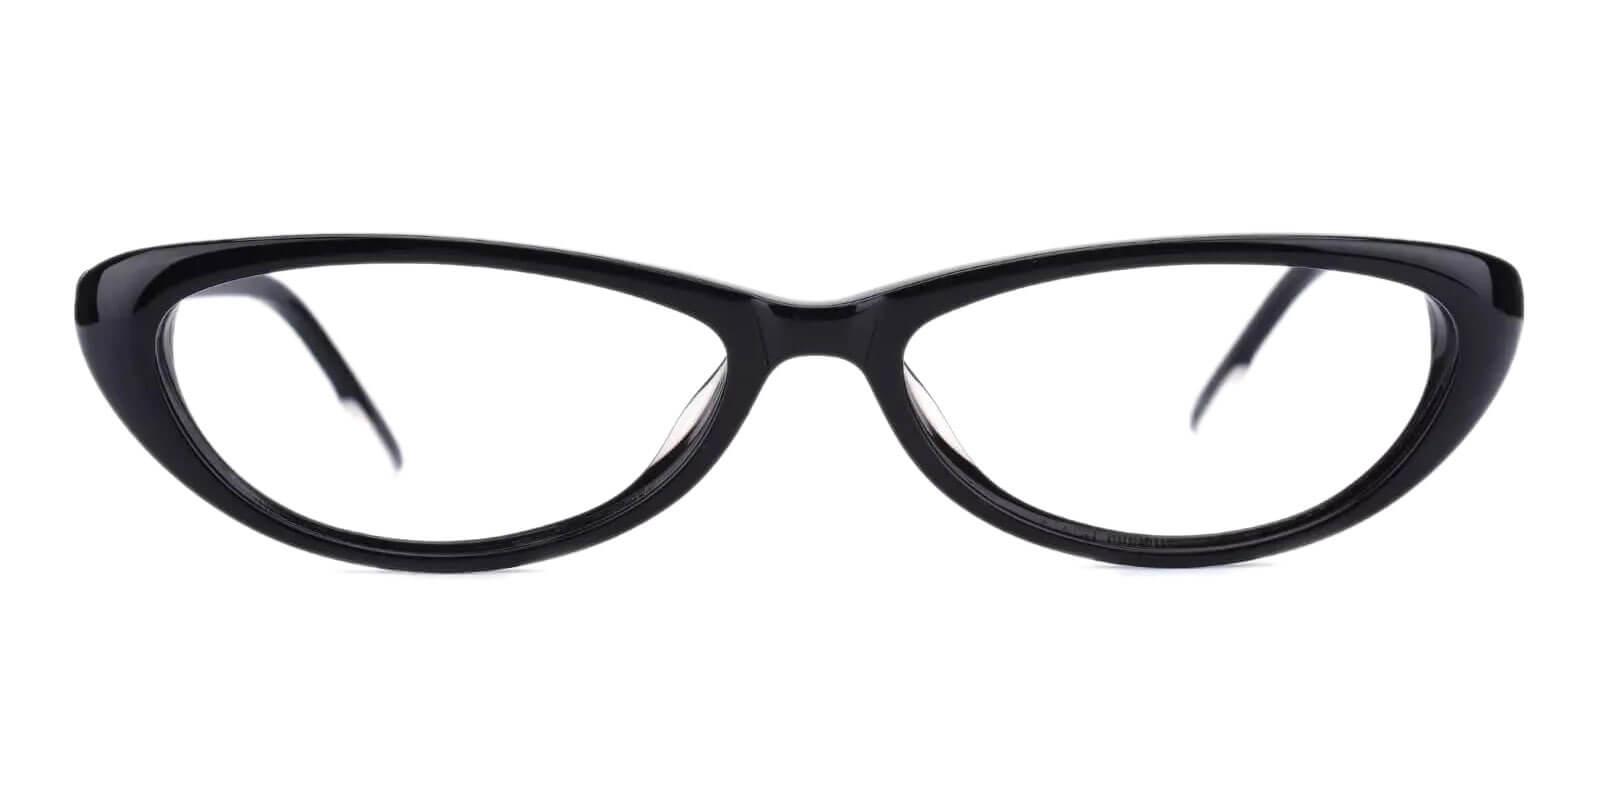 Nevaeh Black Acetate Eyeglasses , UniversalBridgeFit Frames from ABBE Glasses